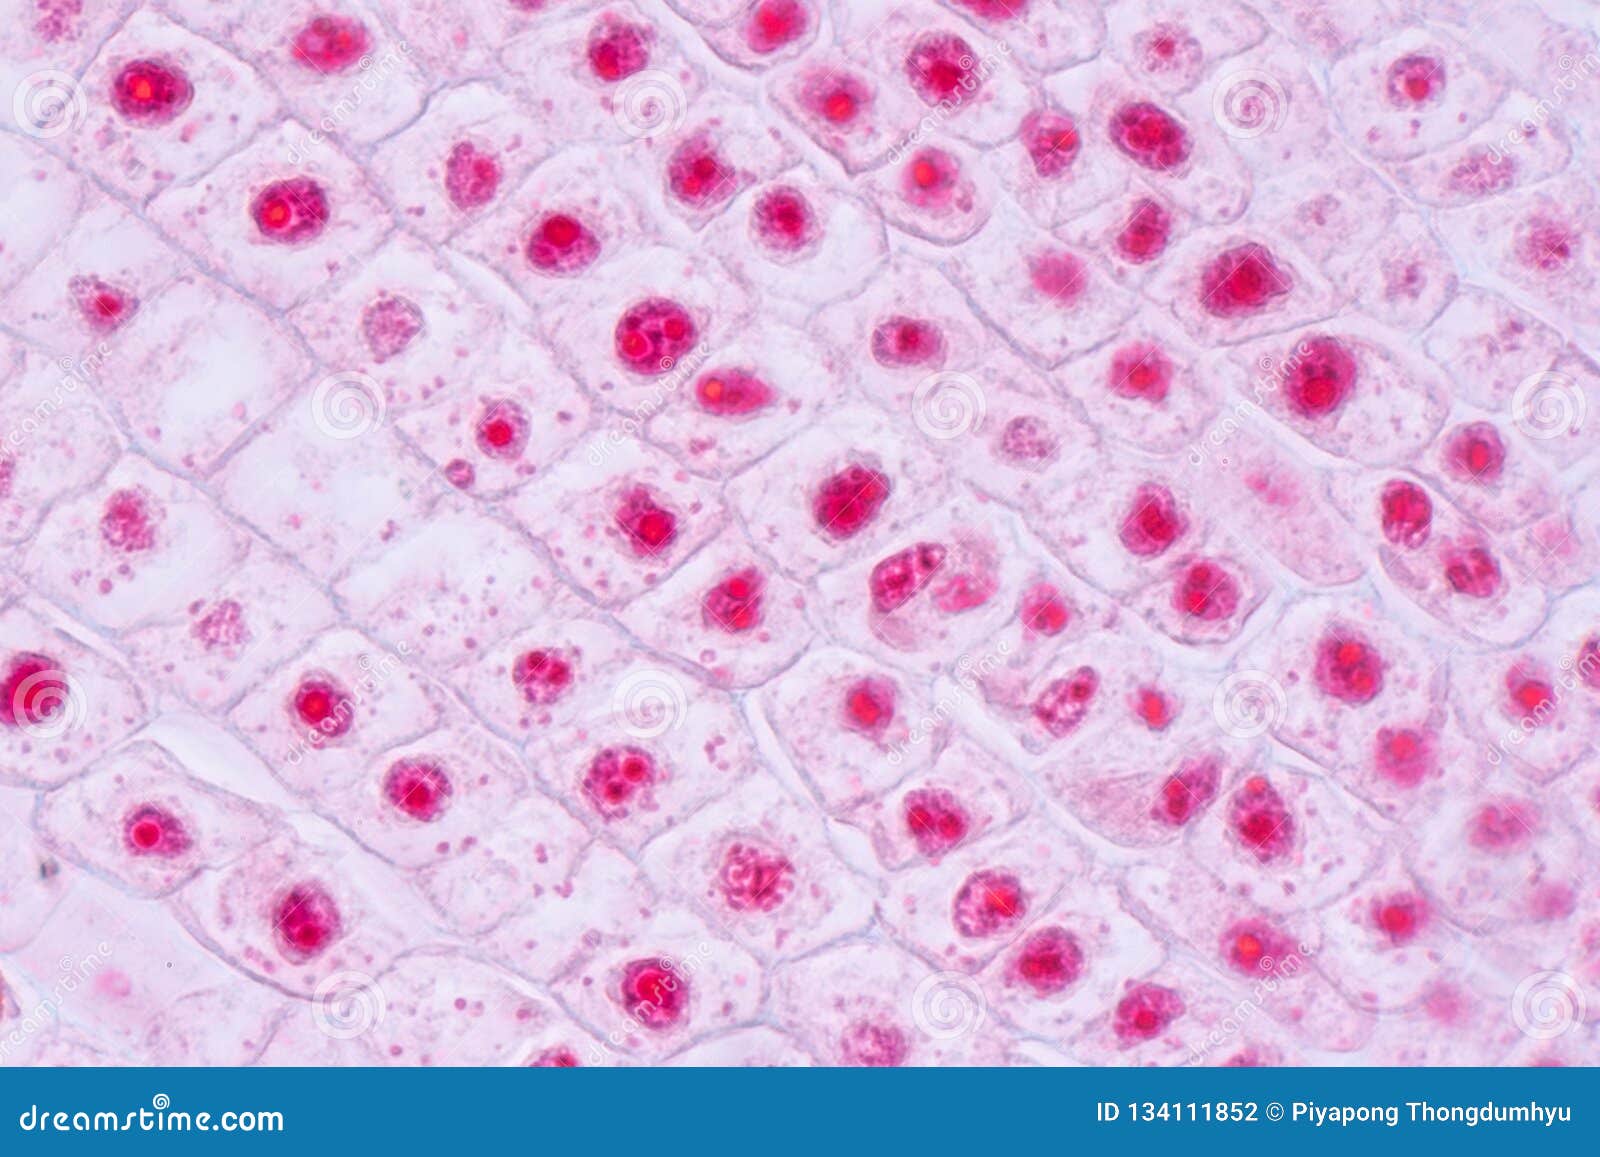 Cellule De Mitose Dans L Astuce De Racine De L Oignon Sous Un Microscope Photo Stock Image Du Histologie Laboratoire